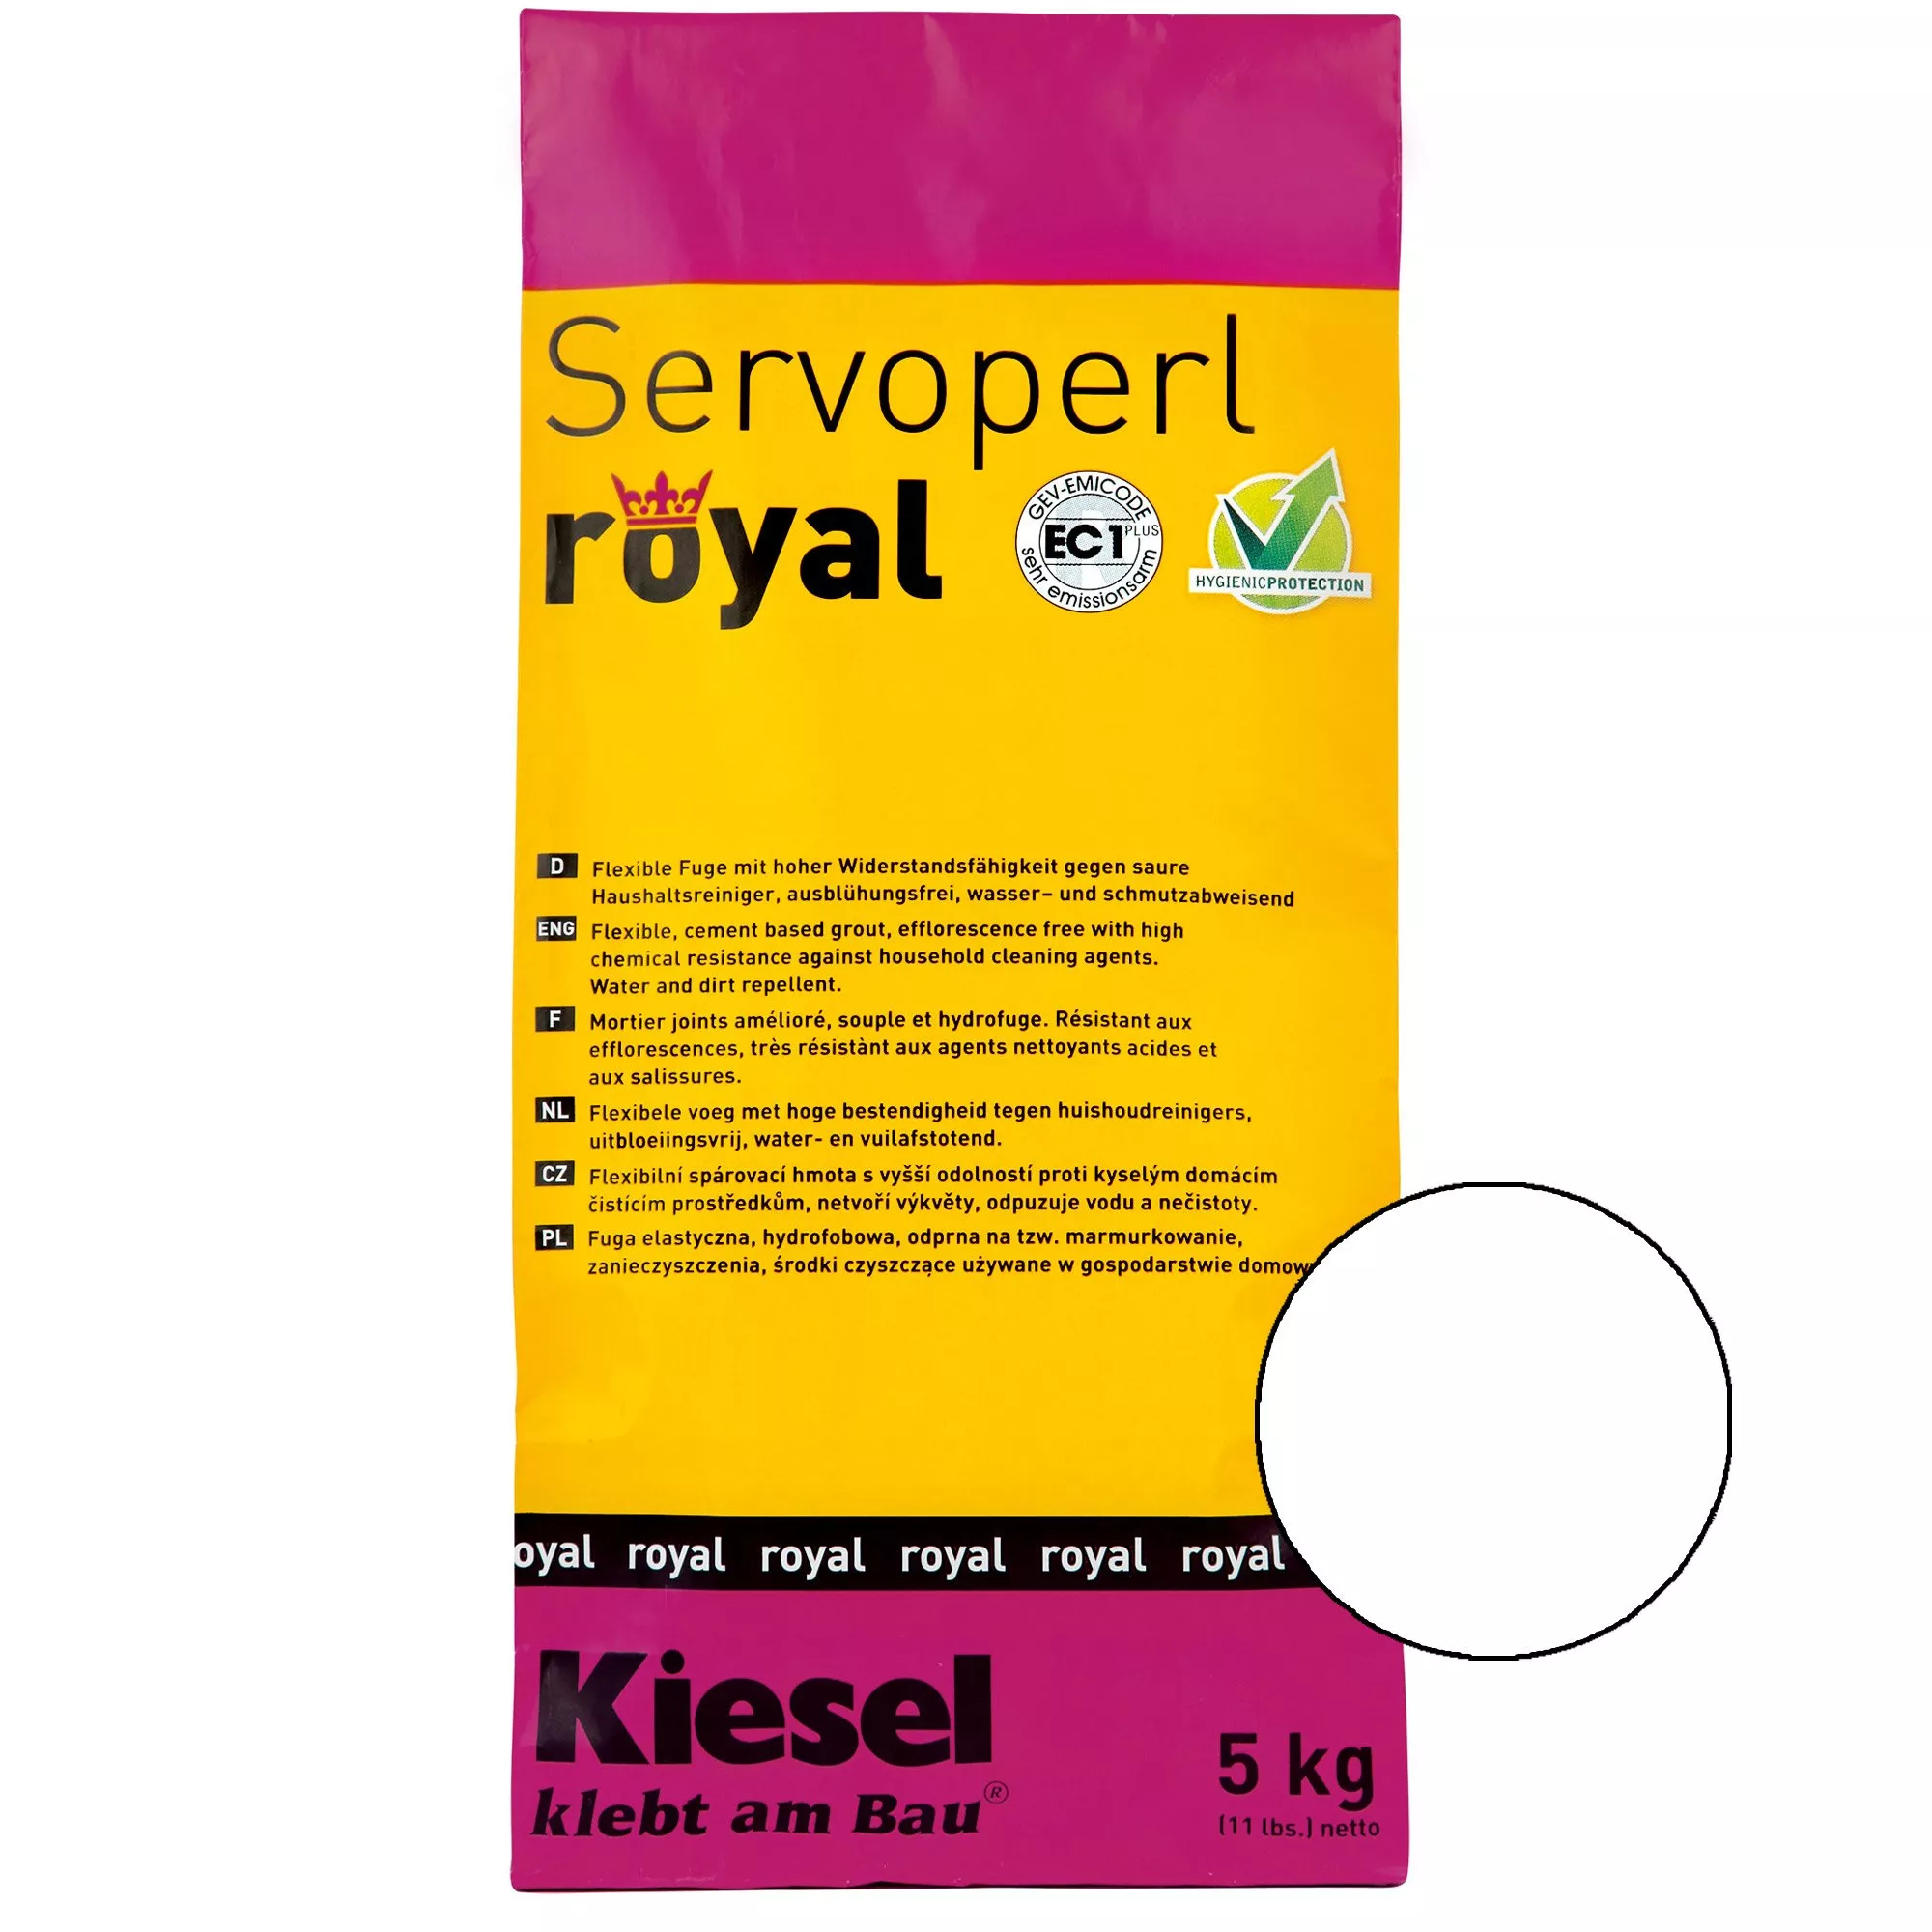 Kiesel Servoperl royal - Flexible, wasser- und schmutzabweisende Fuge (5KG Weiß)